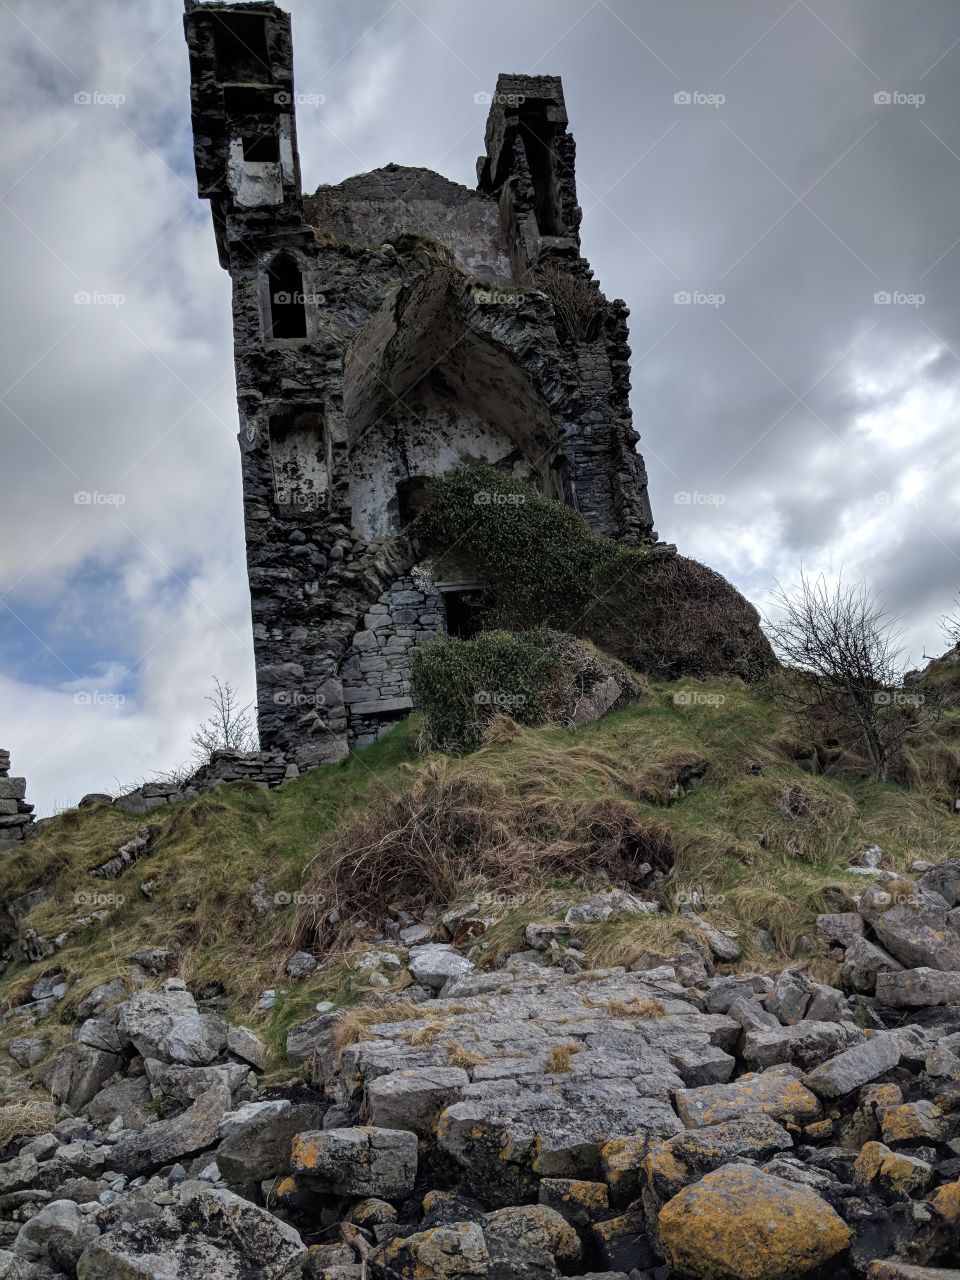 Tower in ruin in Ireland